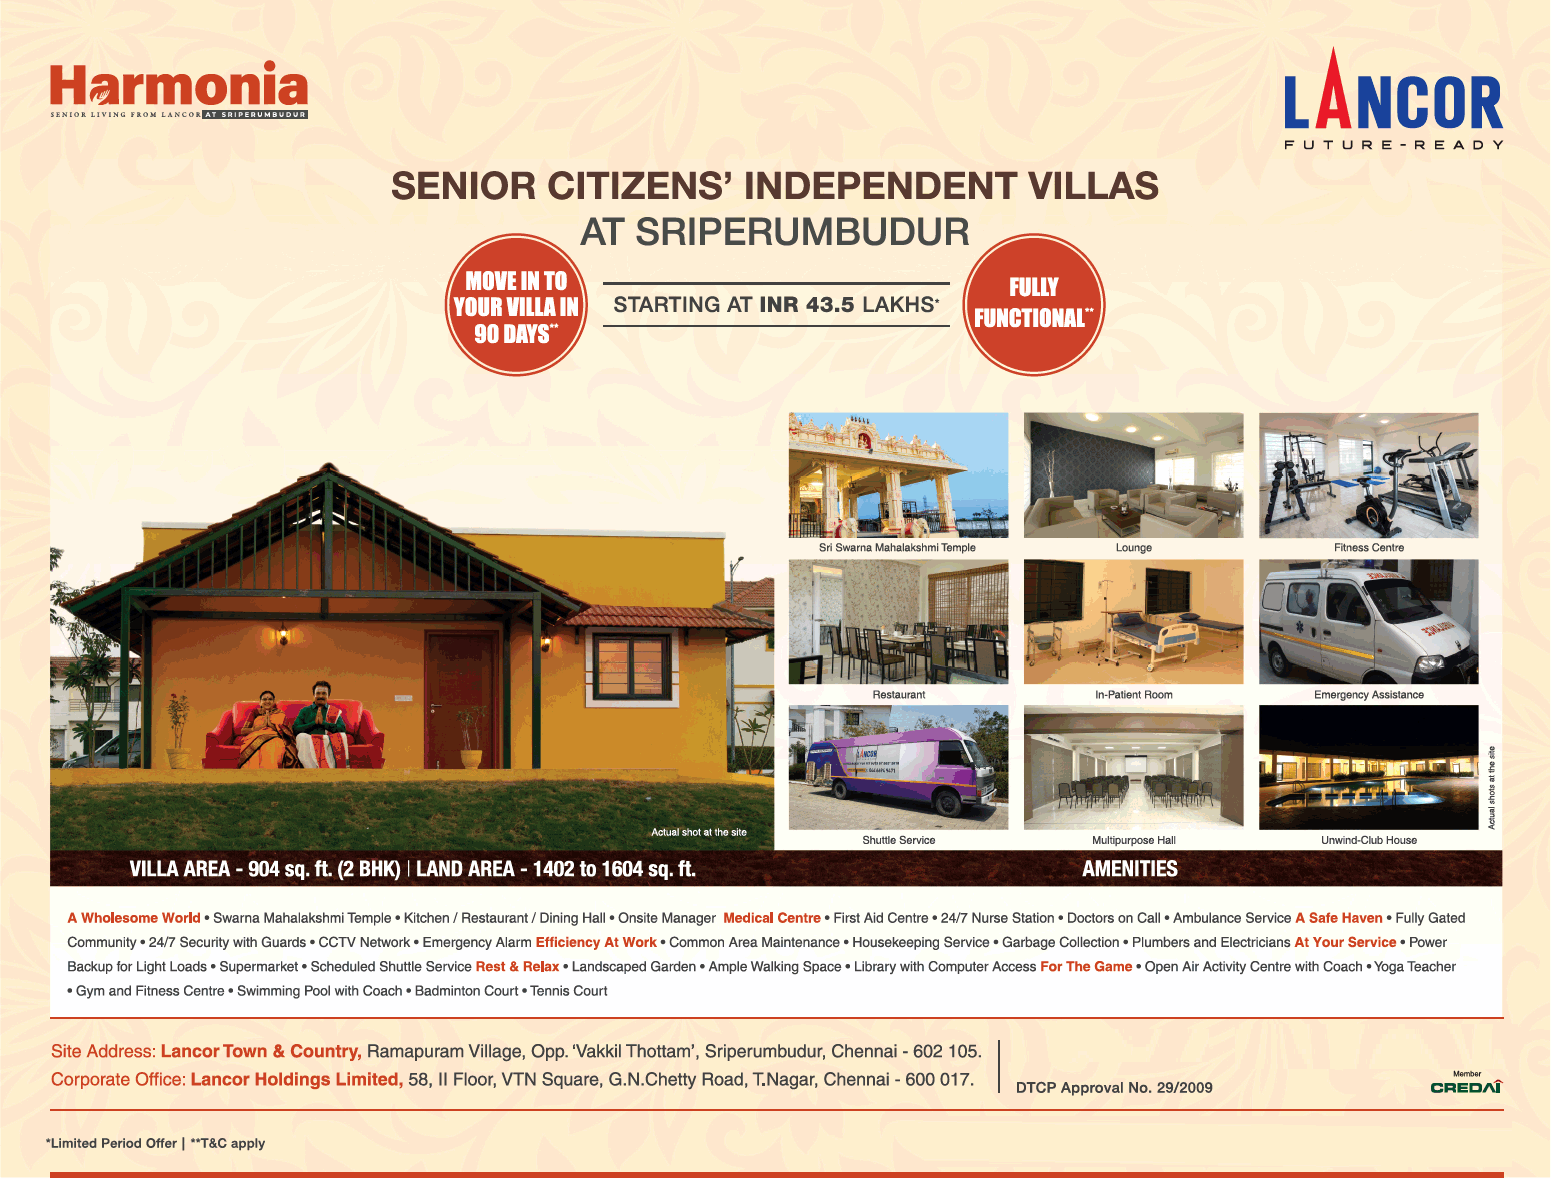 Lancor Harmonia  offer starting at INR 43.5 Lakhs in Chennai